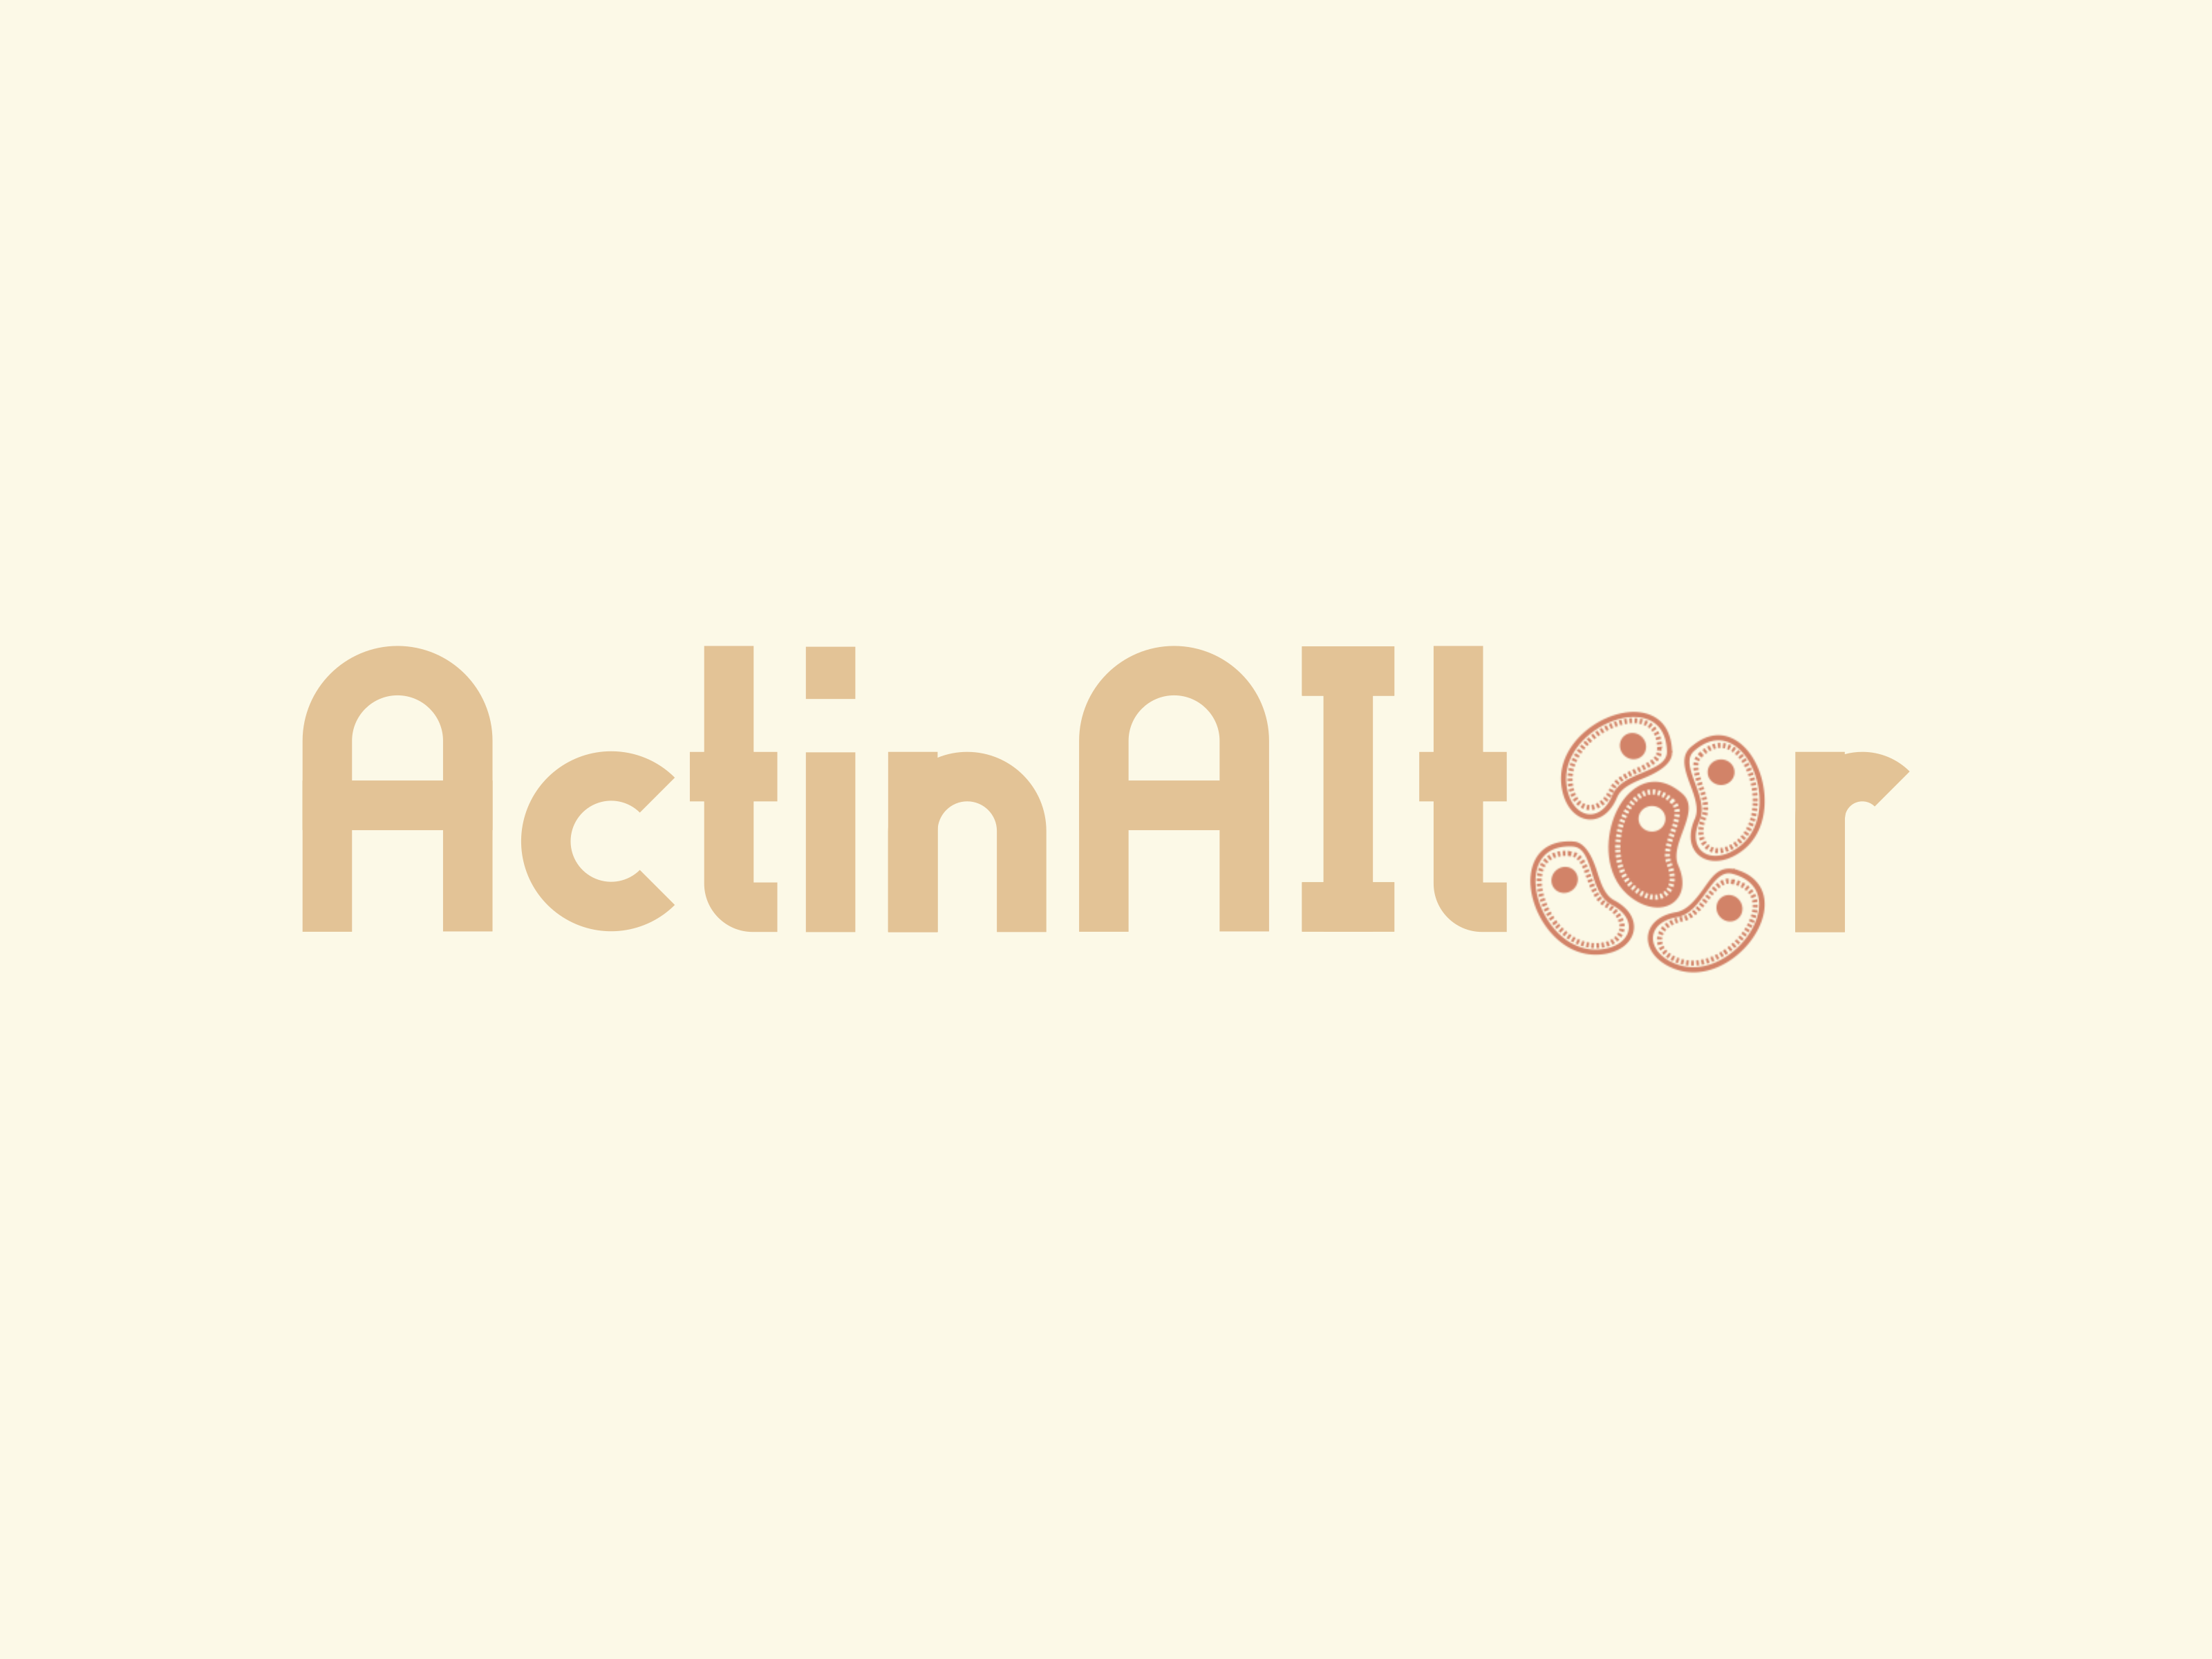 ActinAItor